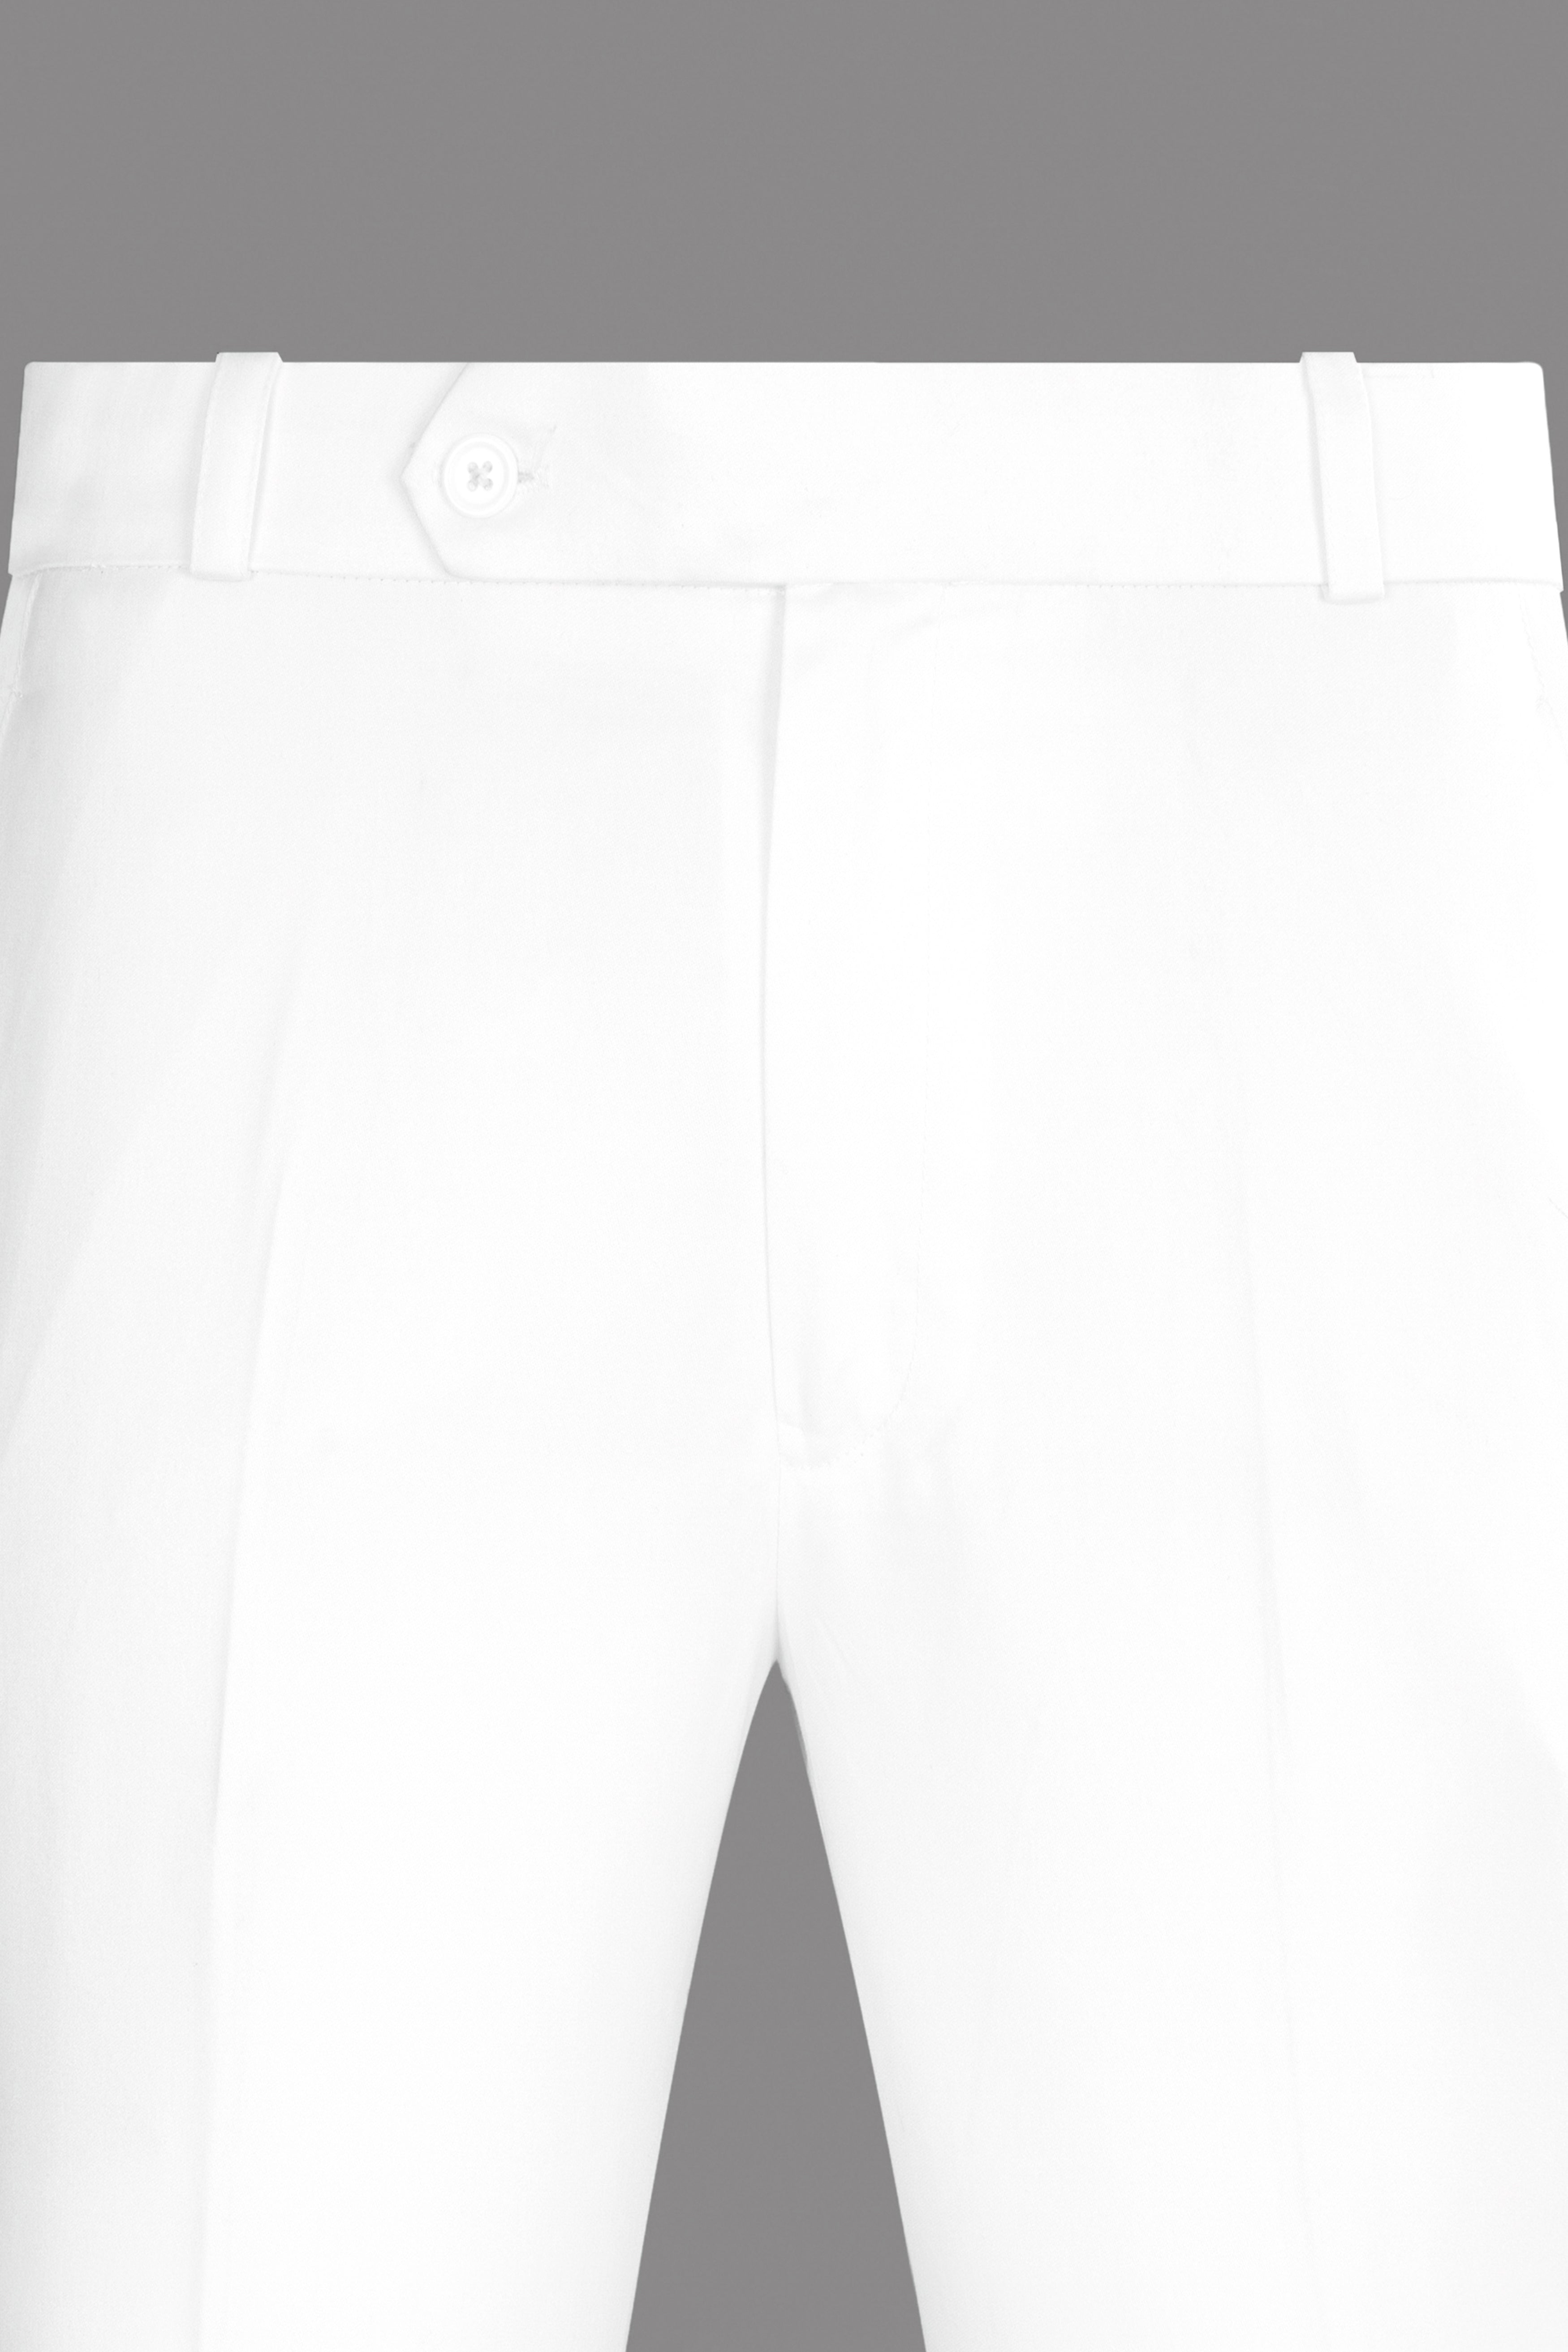 Bright White Subtle Sheen Tuxedo Suit